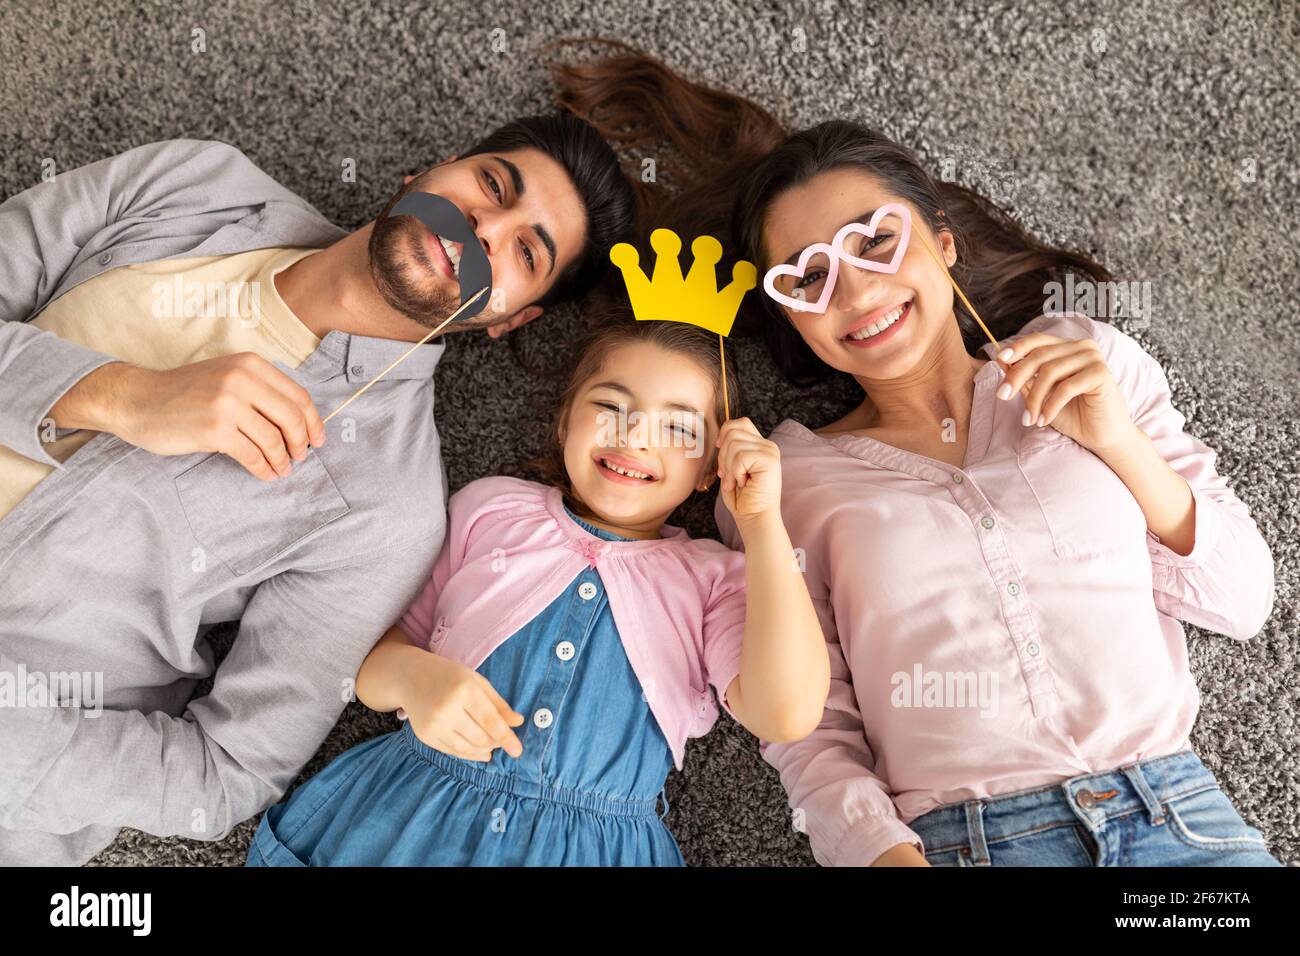 Divertido padre árabe, madre e hija divertirse con la corona, vasos y bigote en palos, tumbado en la alfombra, vista superior Foto de stock